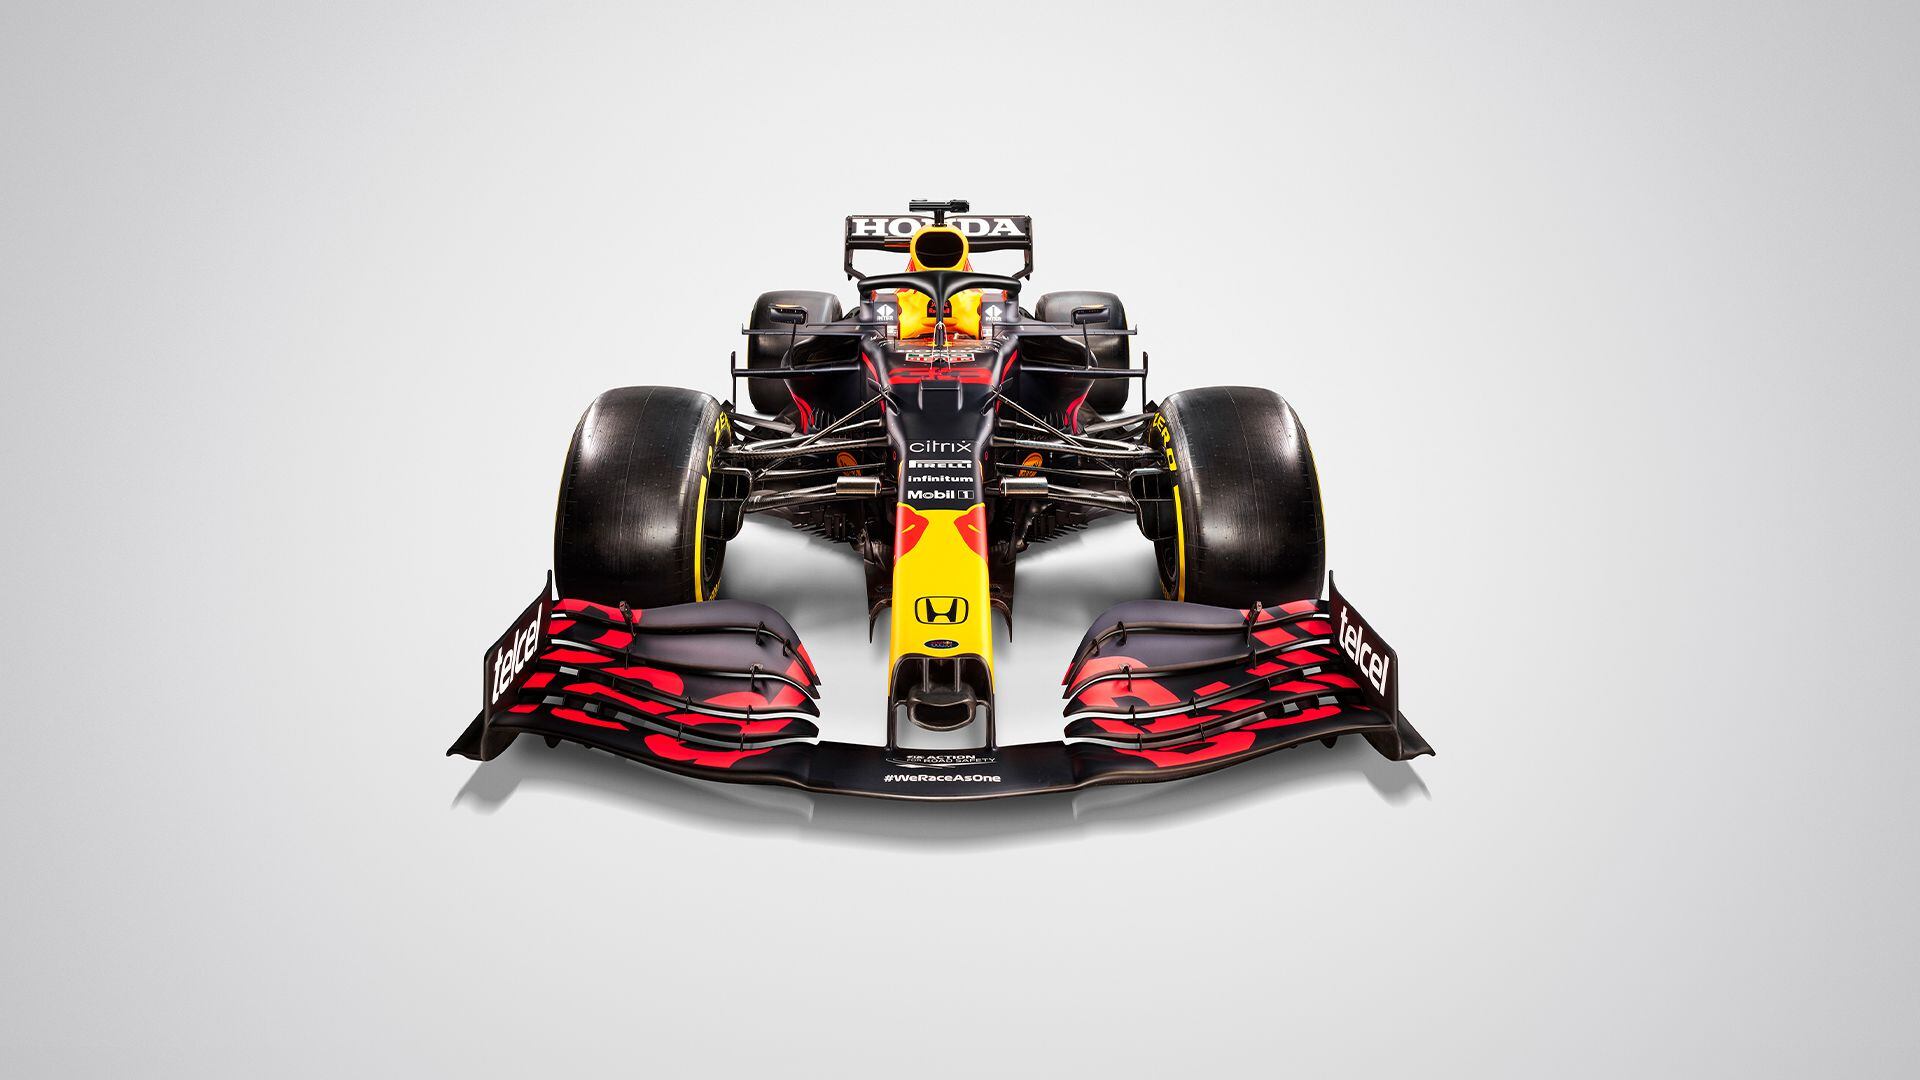 El monoplaza será pilotado por Verstappen y Pérez. (Foto: Red Bull Racing)